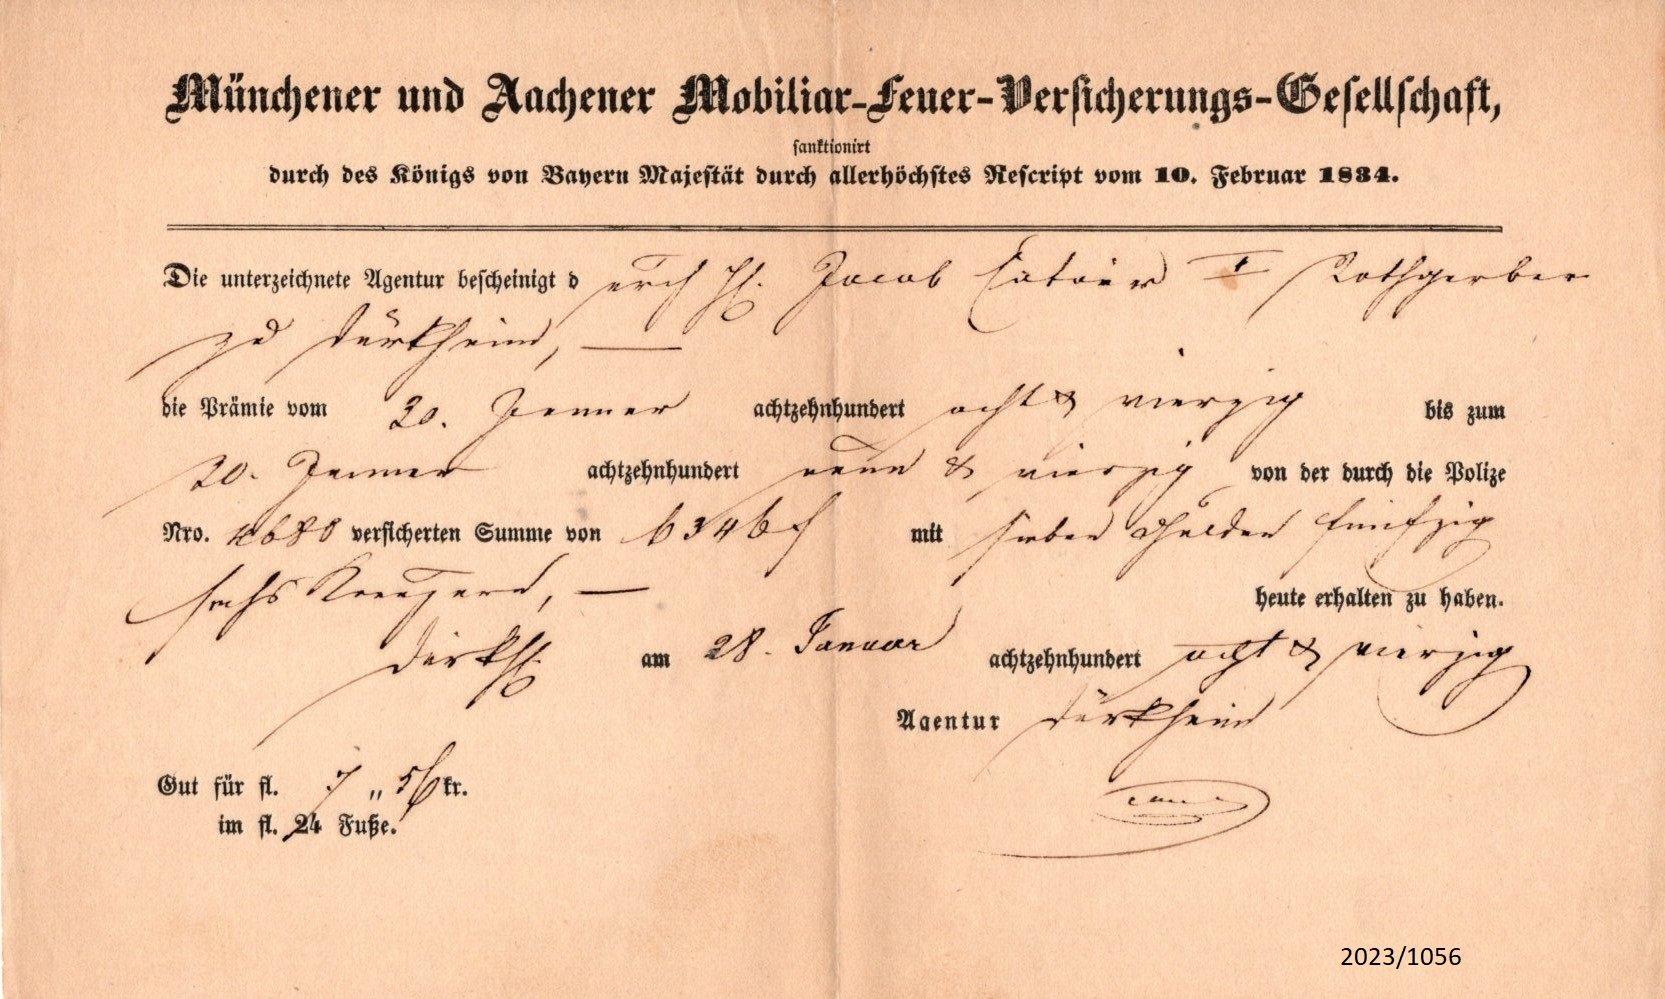 Quittung der Münchener und Aachener Mobiliar-Feuer-Versicherungs-Gesellschaft 1889 (Stadtmuseum Bad Dürkheim im Kulturzentrum Haus Catoir CC BY-NC-SA)